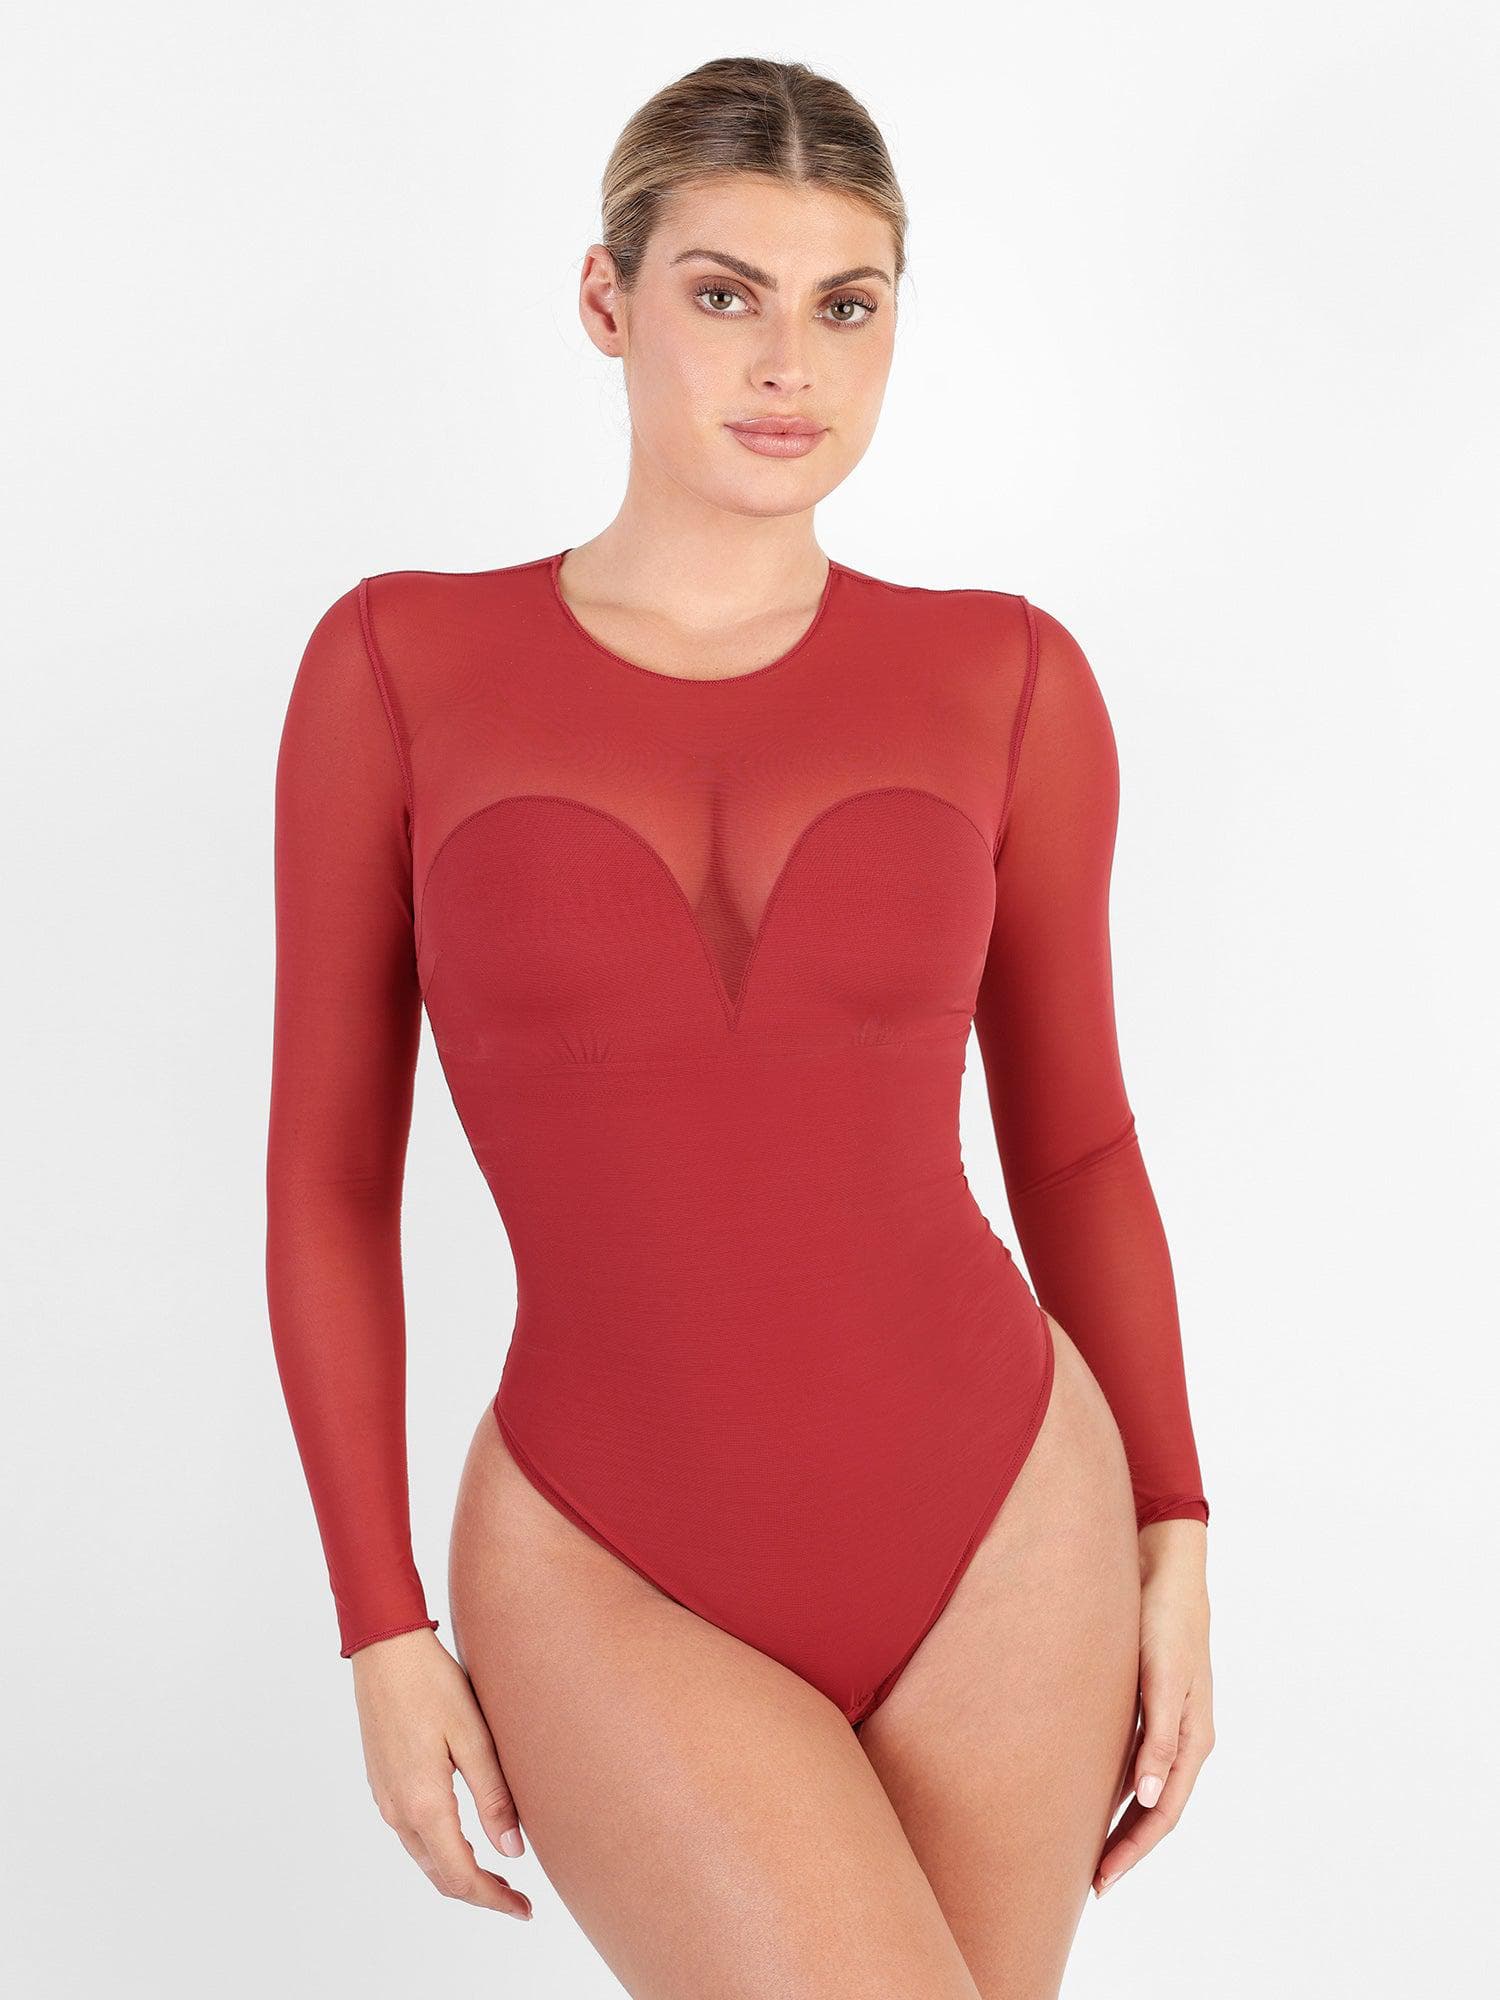 New Design Deep V Neck Long Sleeve Female Sexy Bodysuit Women Tops